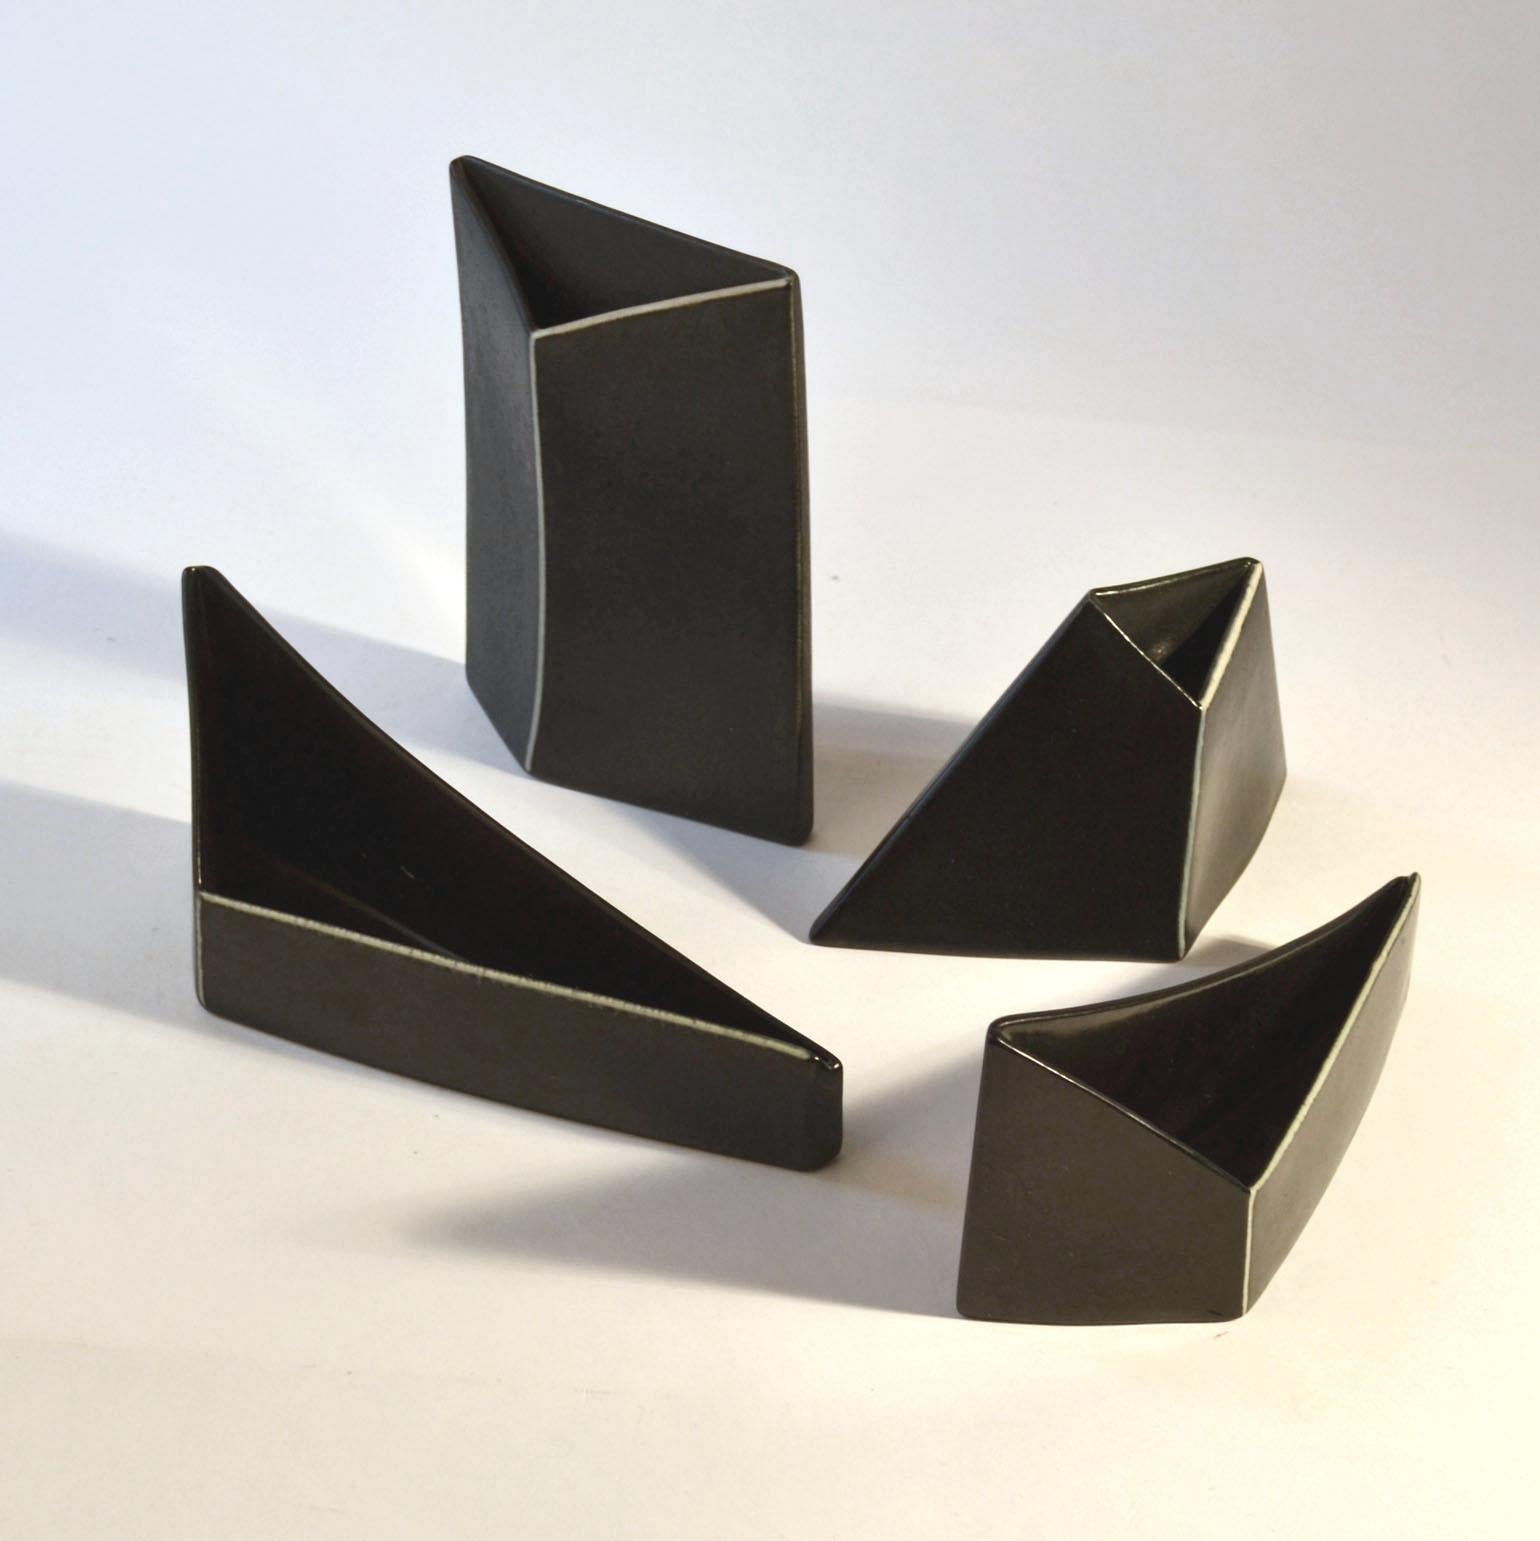 Minimalistische dreieckige Keramik 5 Schalen und 3 Vasen in schwarzer Glasur mit weißen grafischen Linien zur Betonung der skulpturalen Formen. Sie werden gegossen und von Hand bearbeitet.
Abmessungen Vasen;
Höhe 18,5 cm, Breite 13 cm, Tiefe 3,5 cm